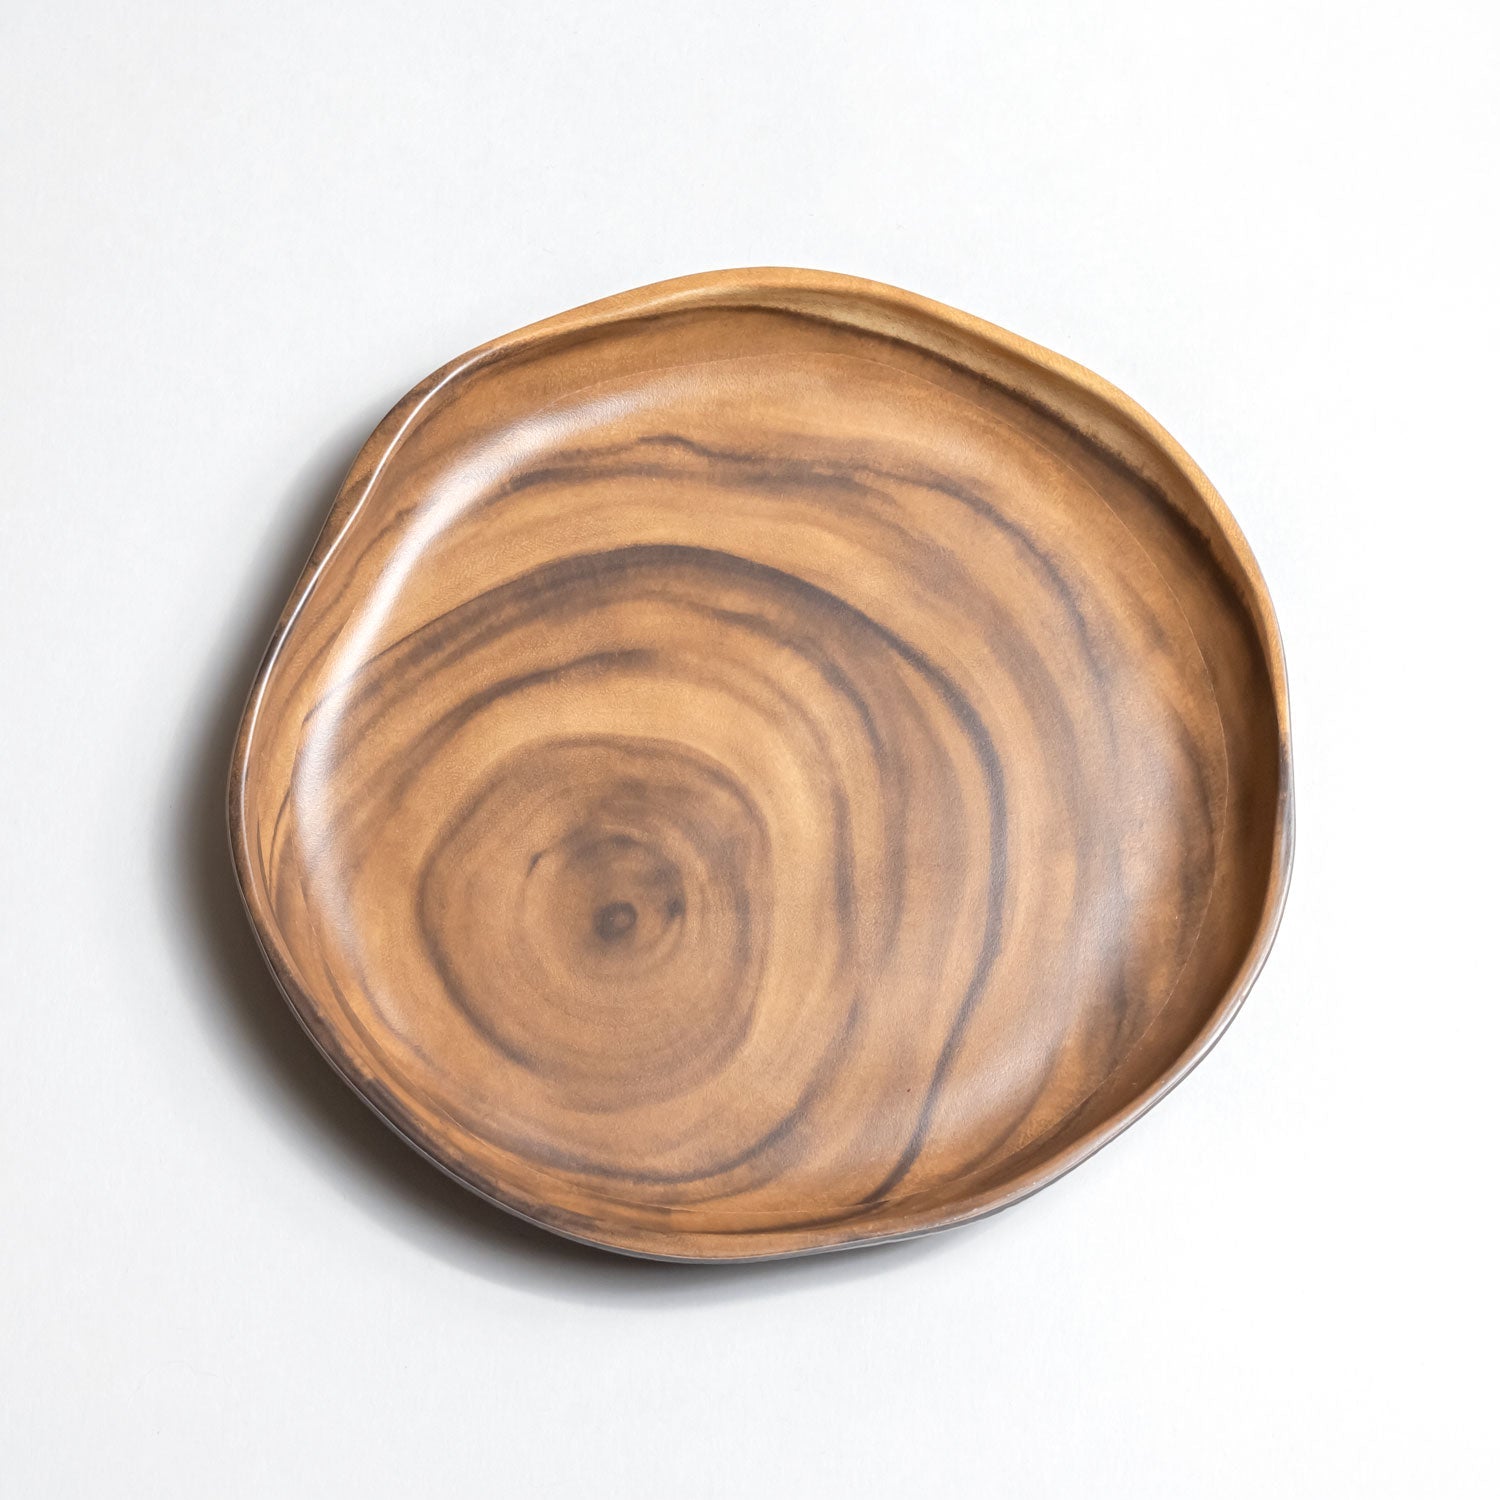 Merritt Designs Sequoia Wood 9.5 inch Melamine Dinner Plate